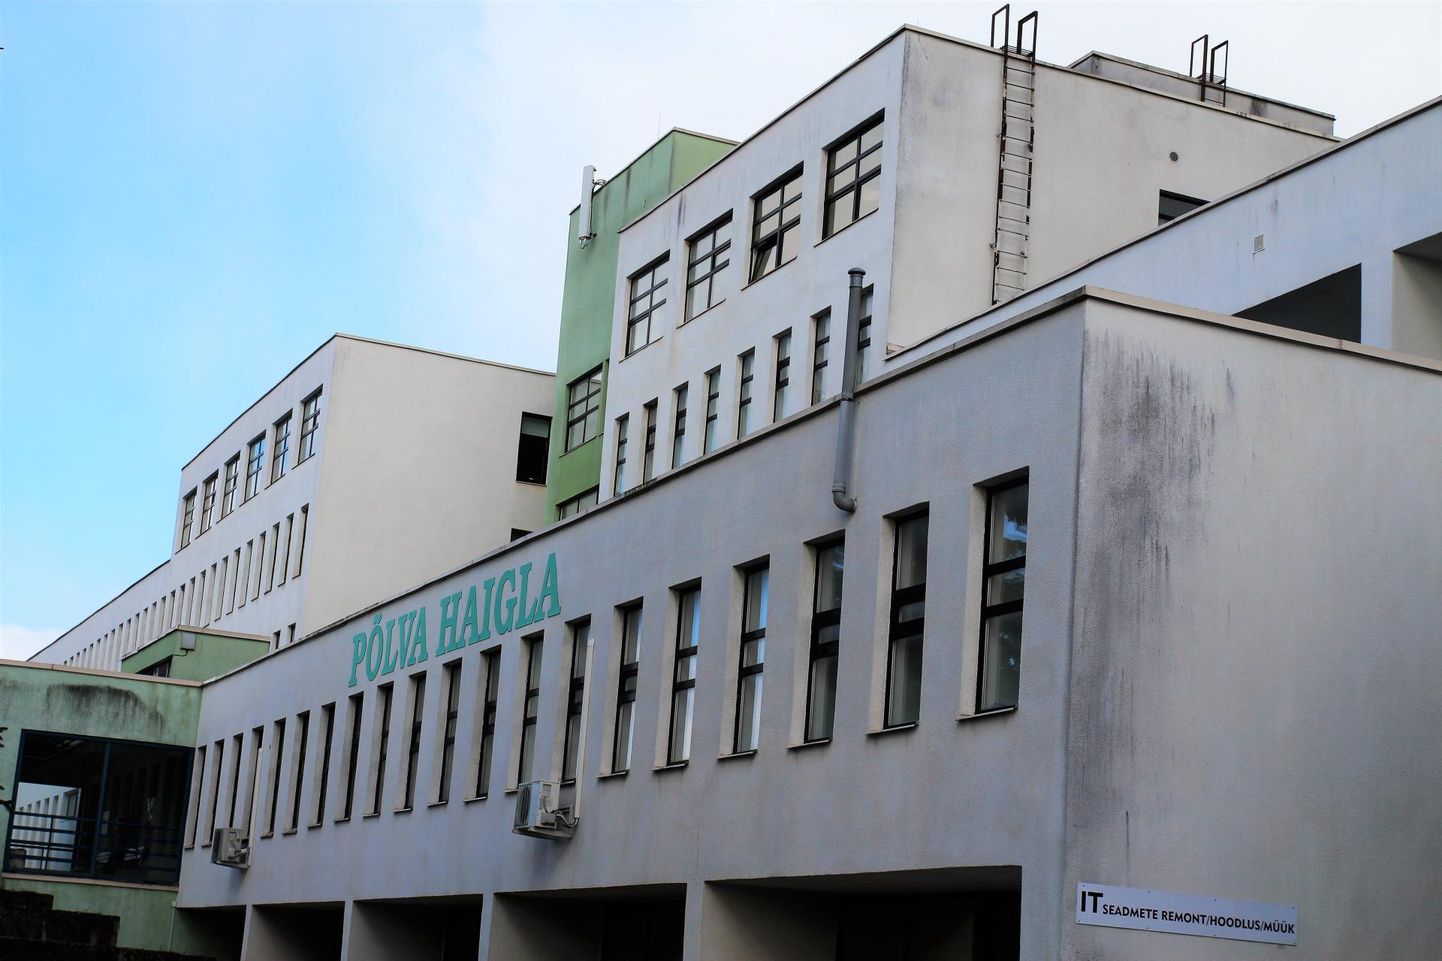 Põlva haiglahoone arhitekt Ell Väärtnõu saab 6. novembril 80-aastaseks.